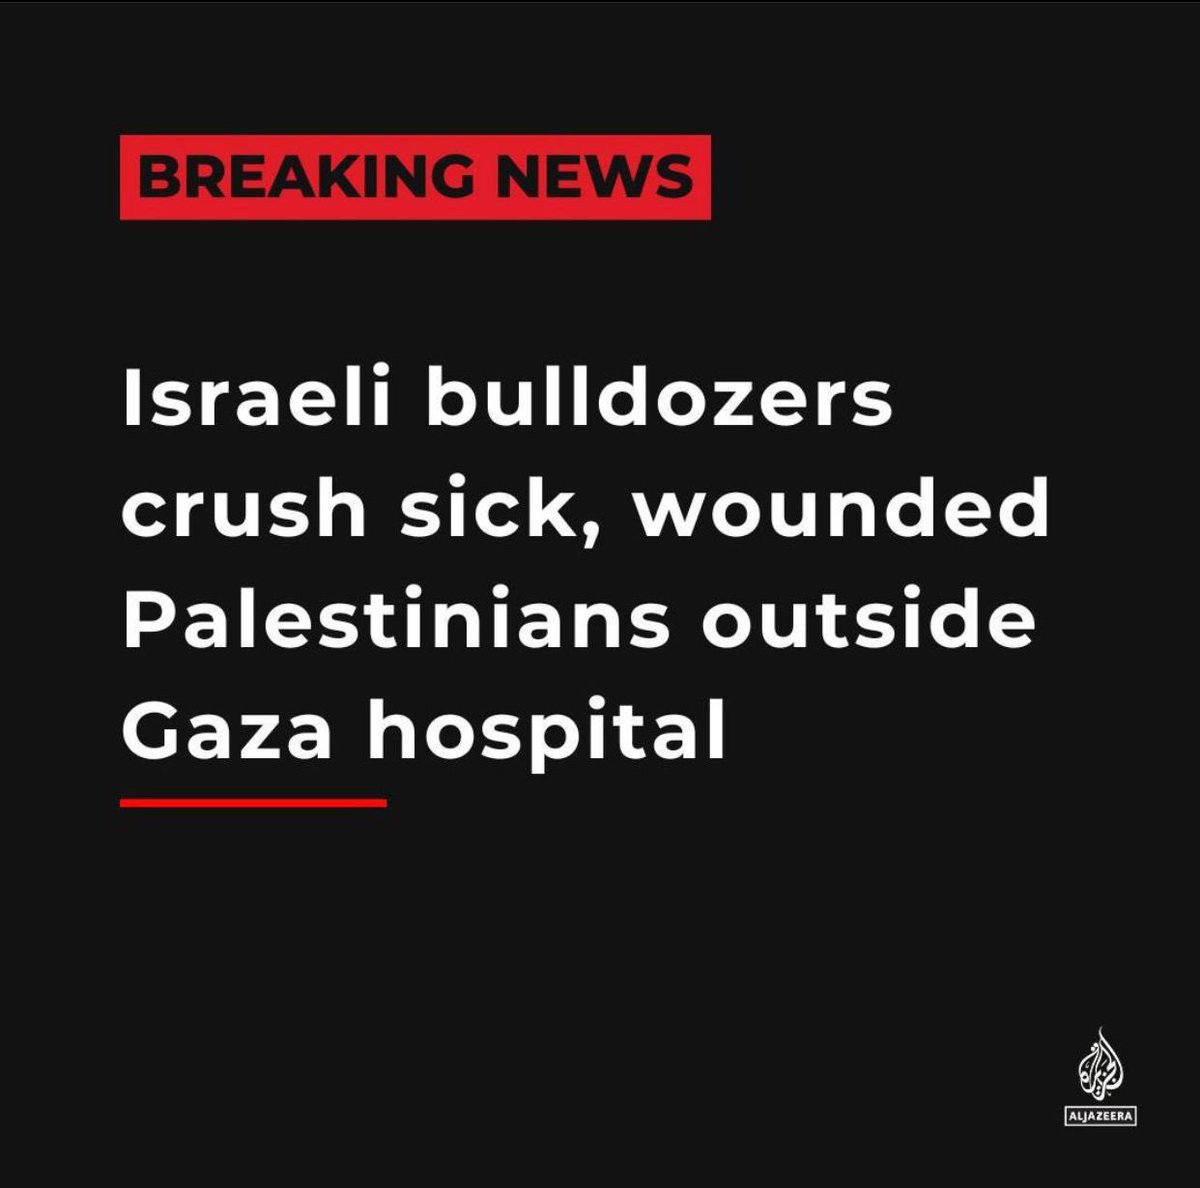 Esta es una de las cosas más repugnantes e inhumanas que he visto en mi vida. Israel ha utilizado un bulldozer para pasar por encima de refugiados cercanos a un hospital mientras dormían, destrozando sus cuerpos. Es un exterminio, y todavía hay quien lo ignora y quien lo apoya.